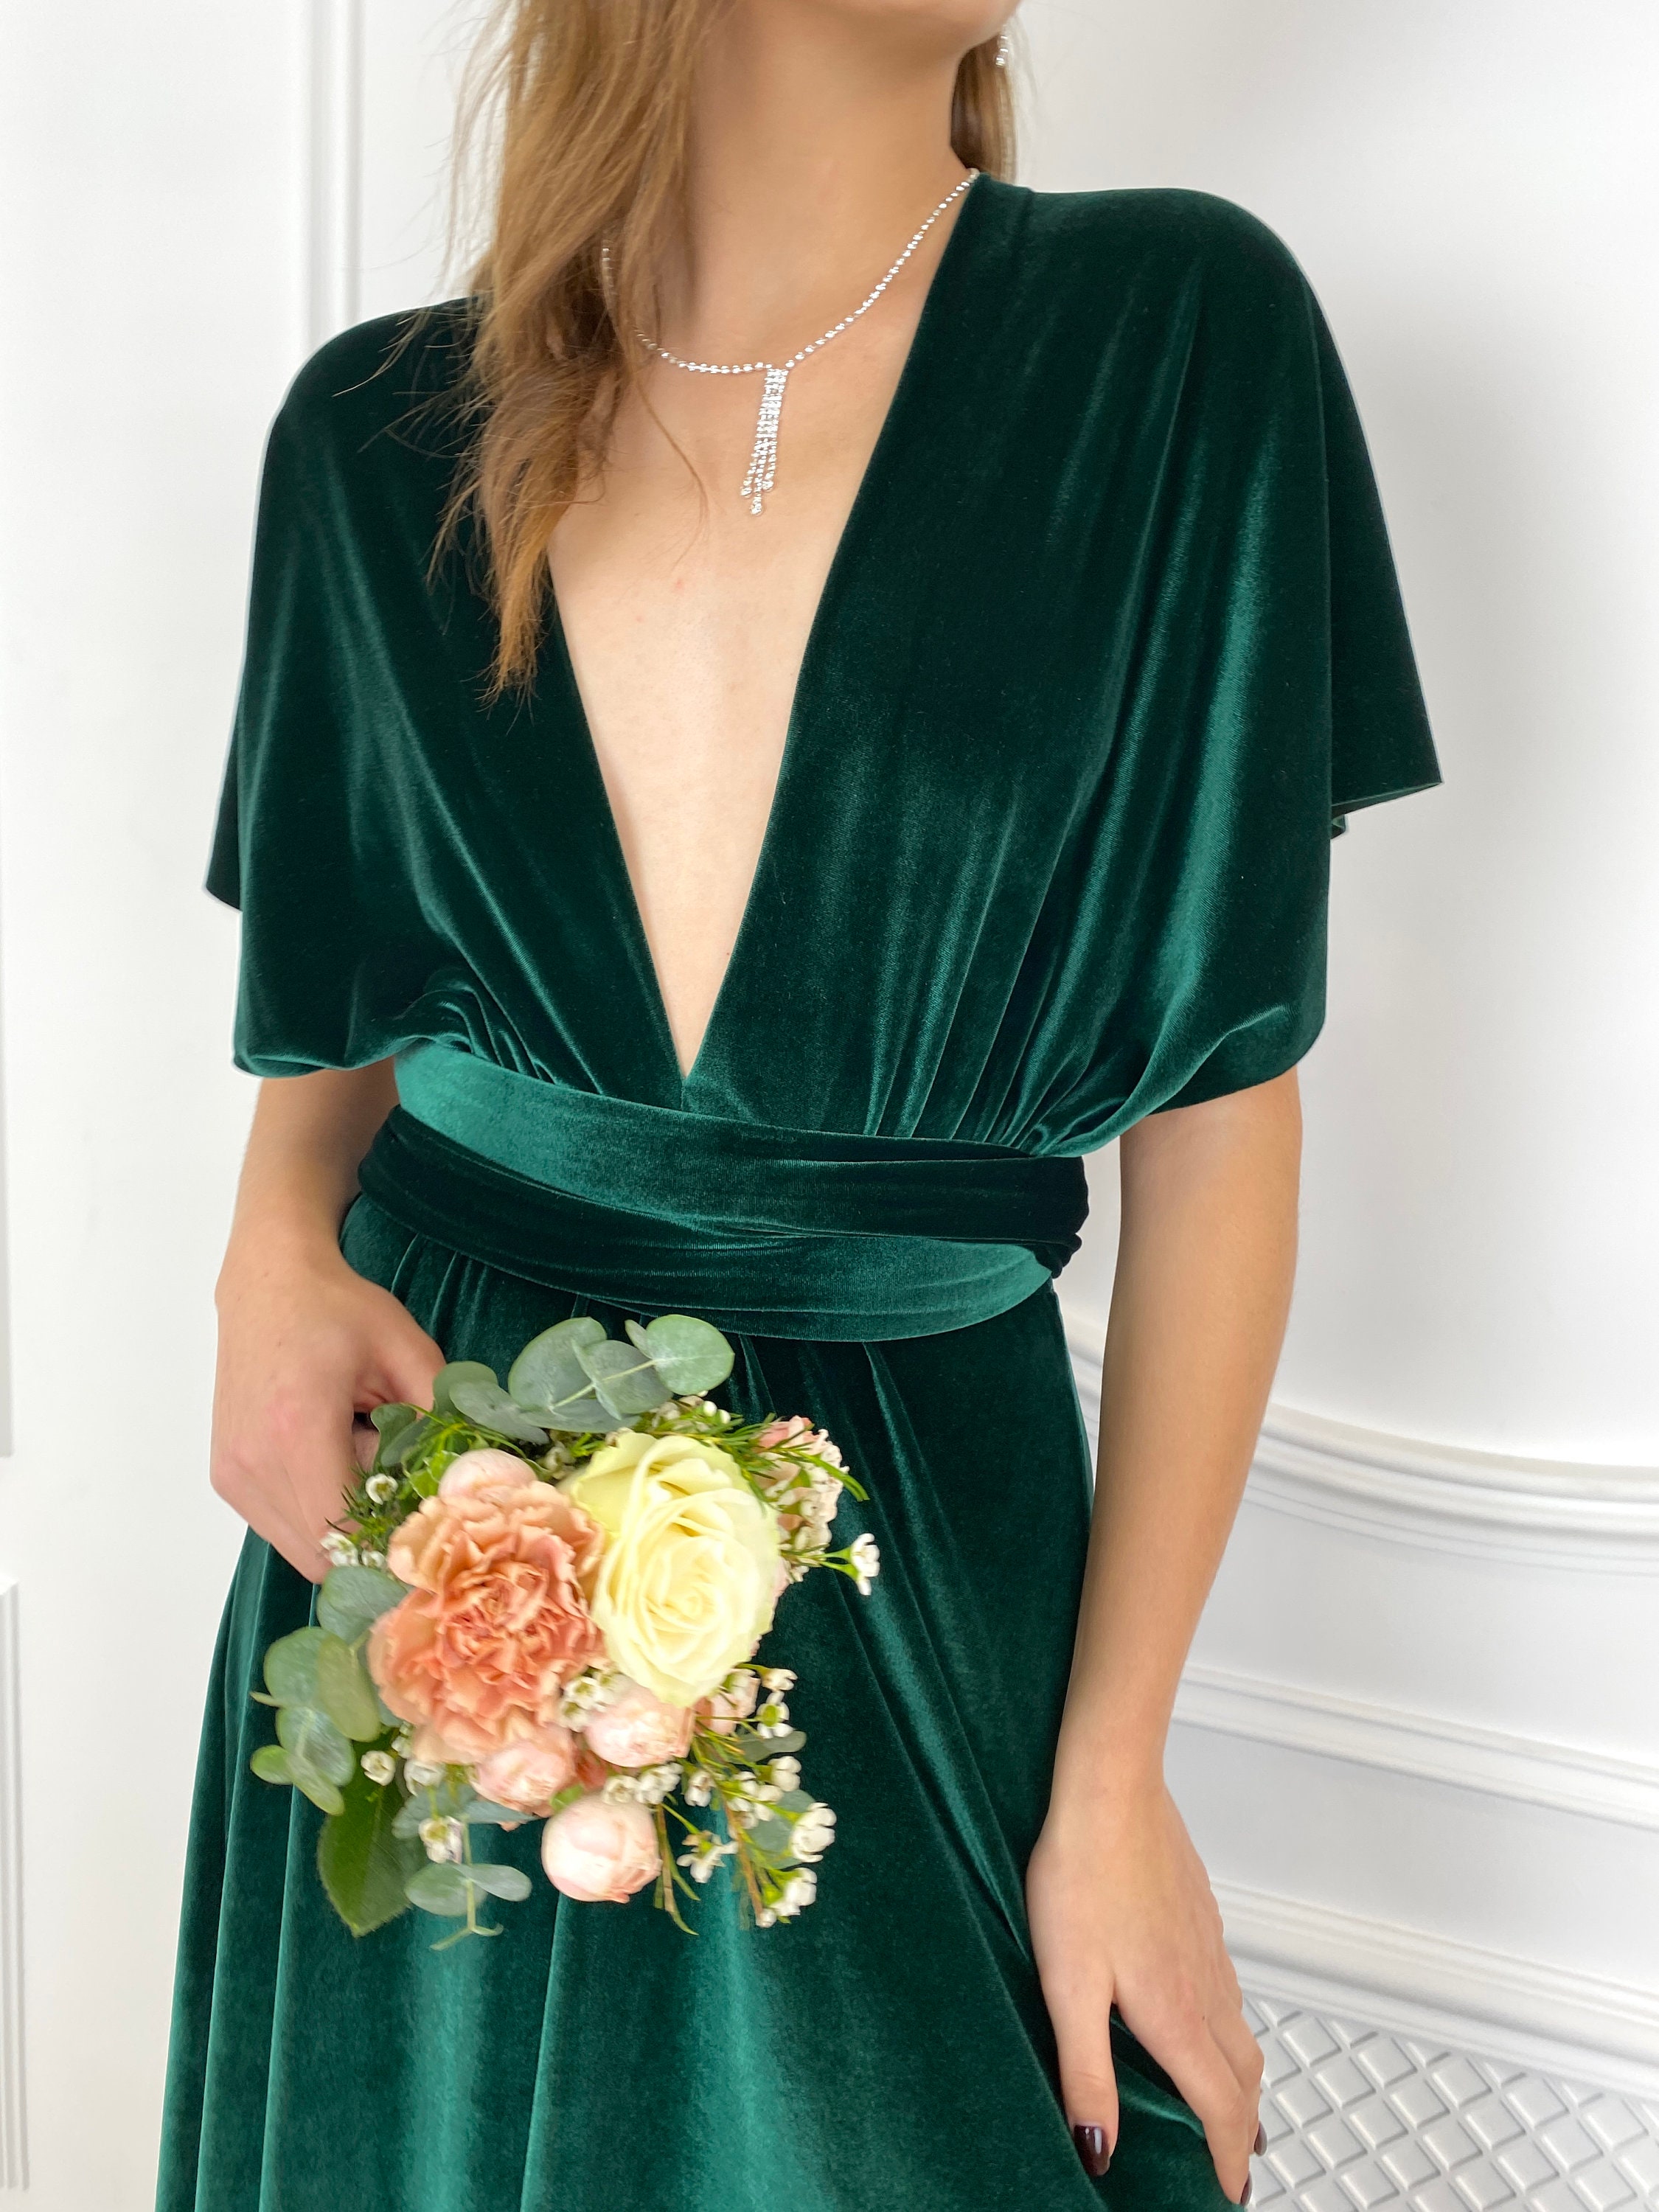 FOREST GREEN Velvet Infinity Dress Bridesmaid Dress Prom Dress - Etsy UK